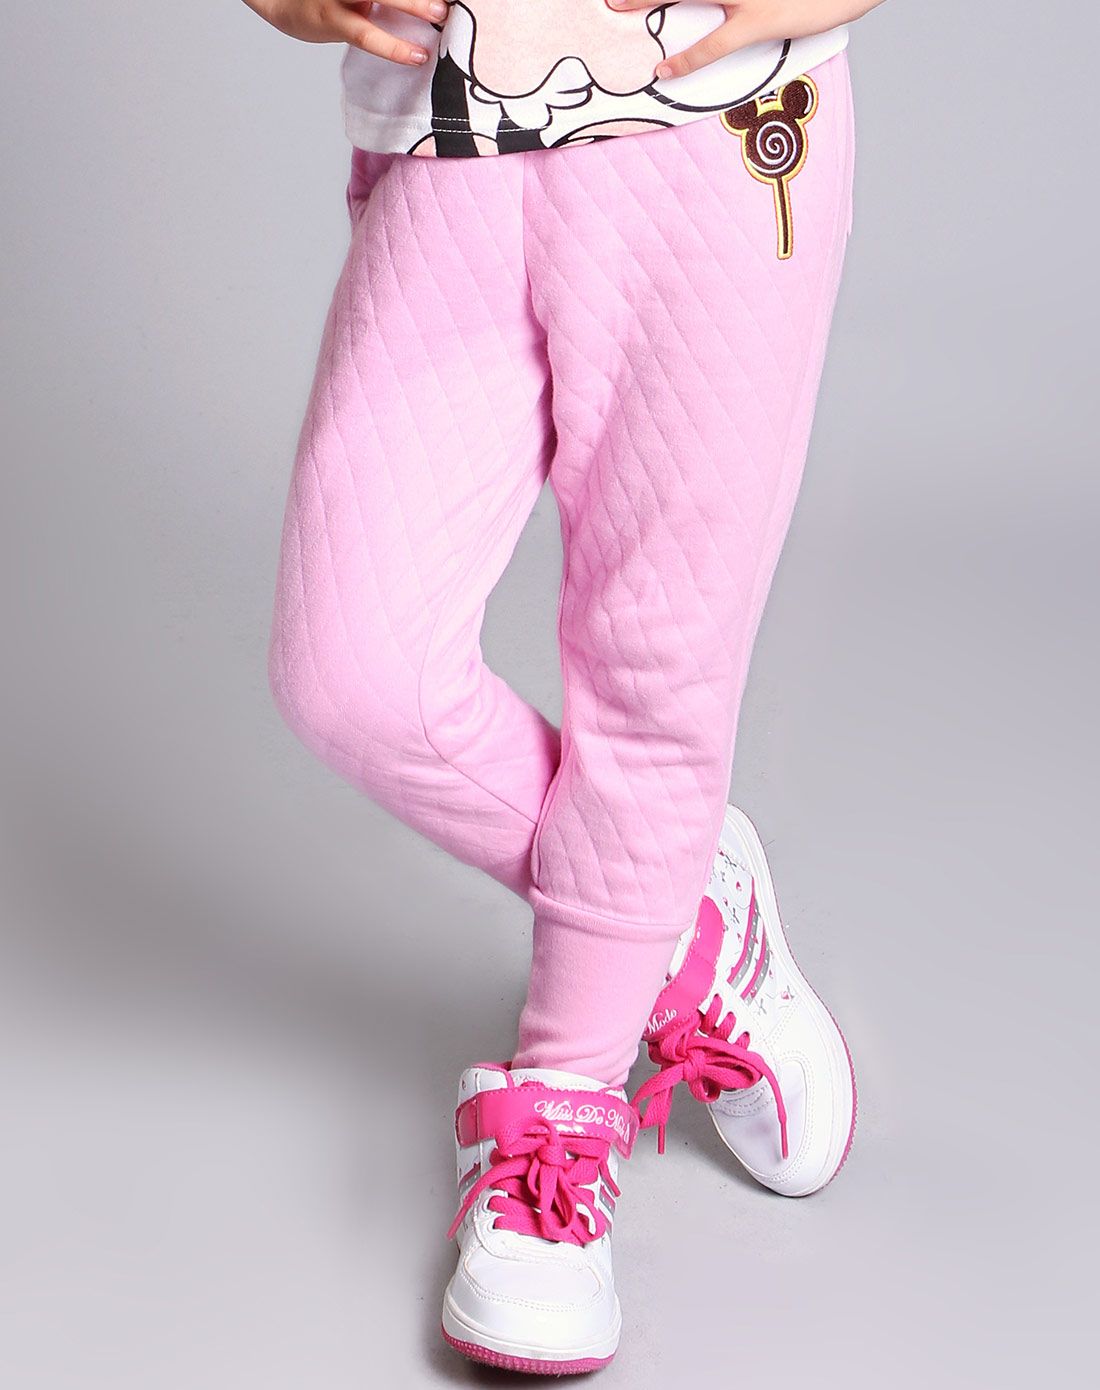 男童粉红色长裤